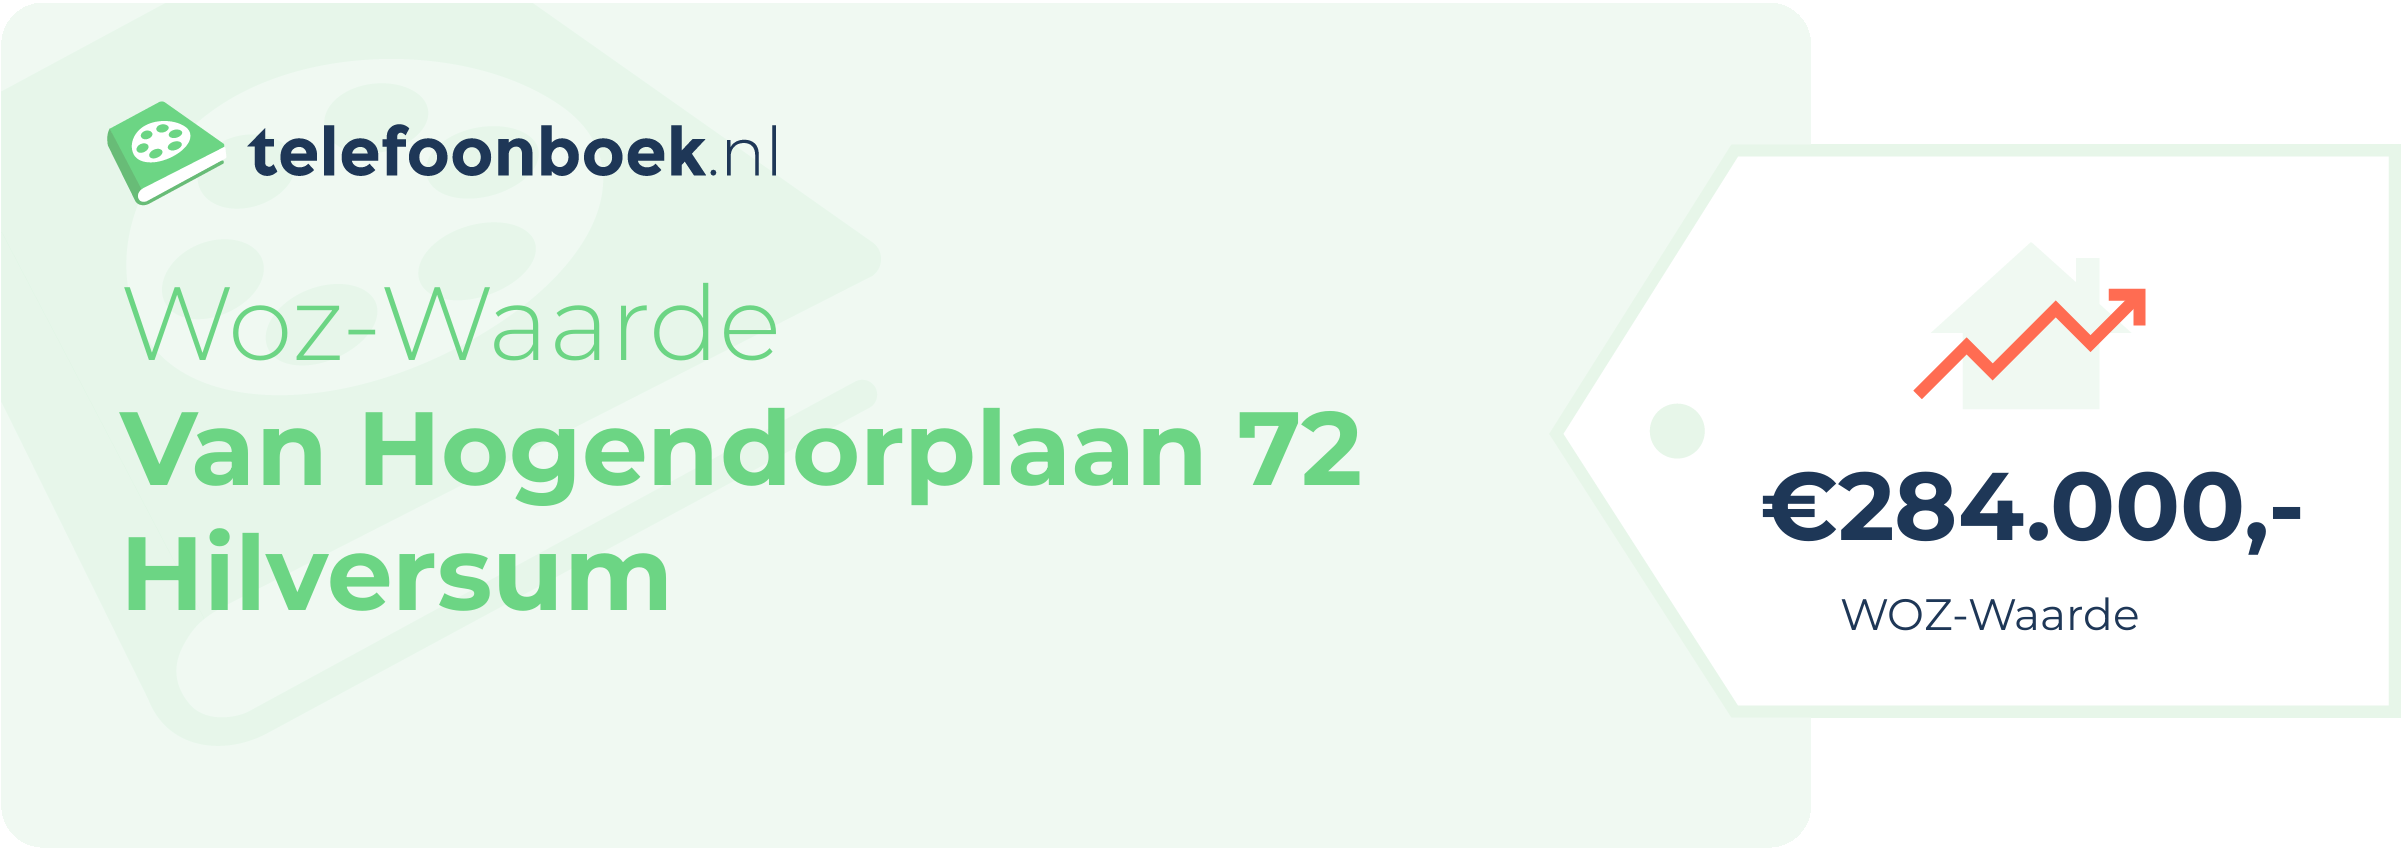 WOZ-waarde Van Hogendorplaan 72 Hilversum